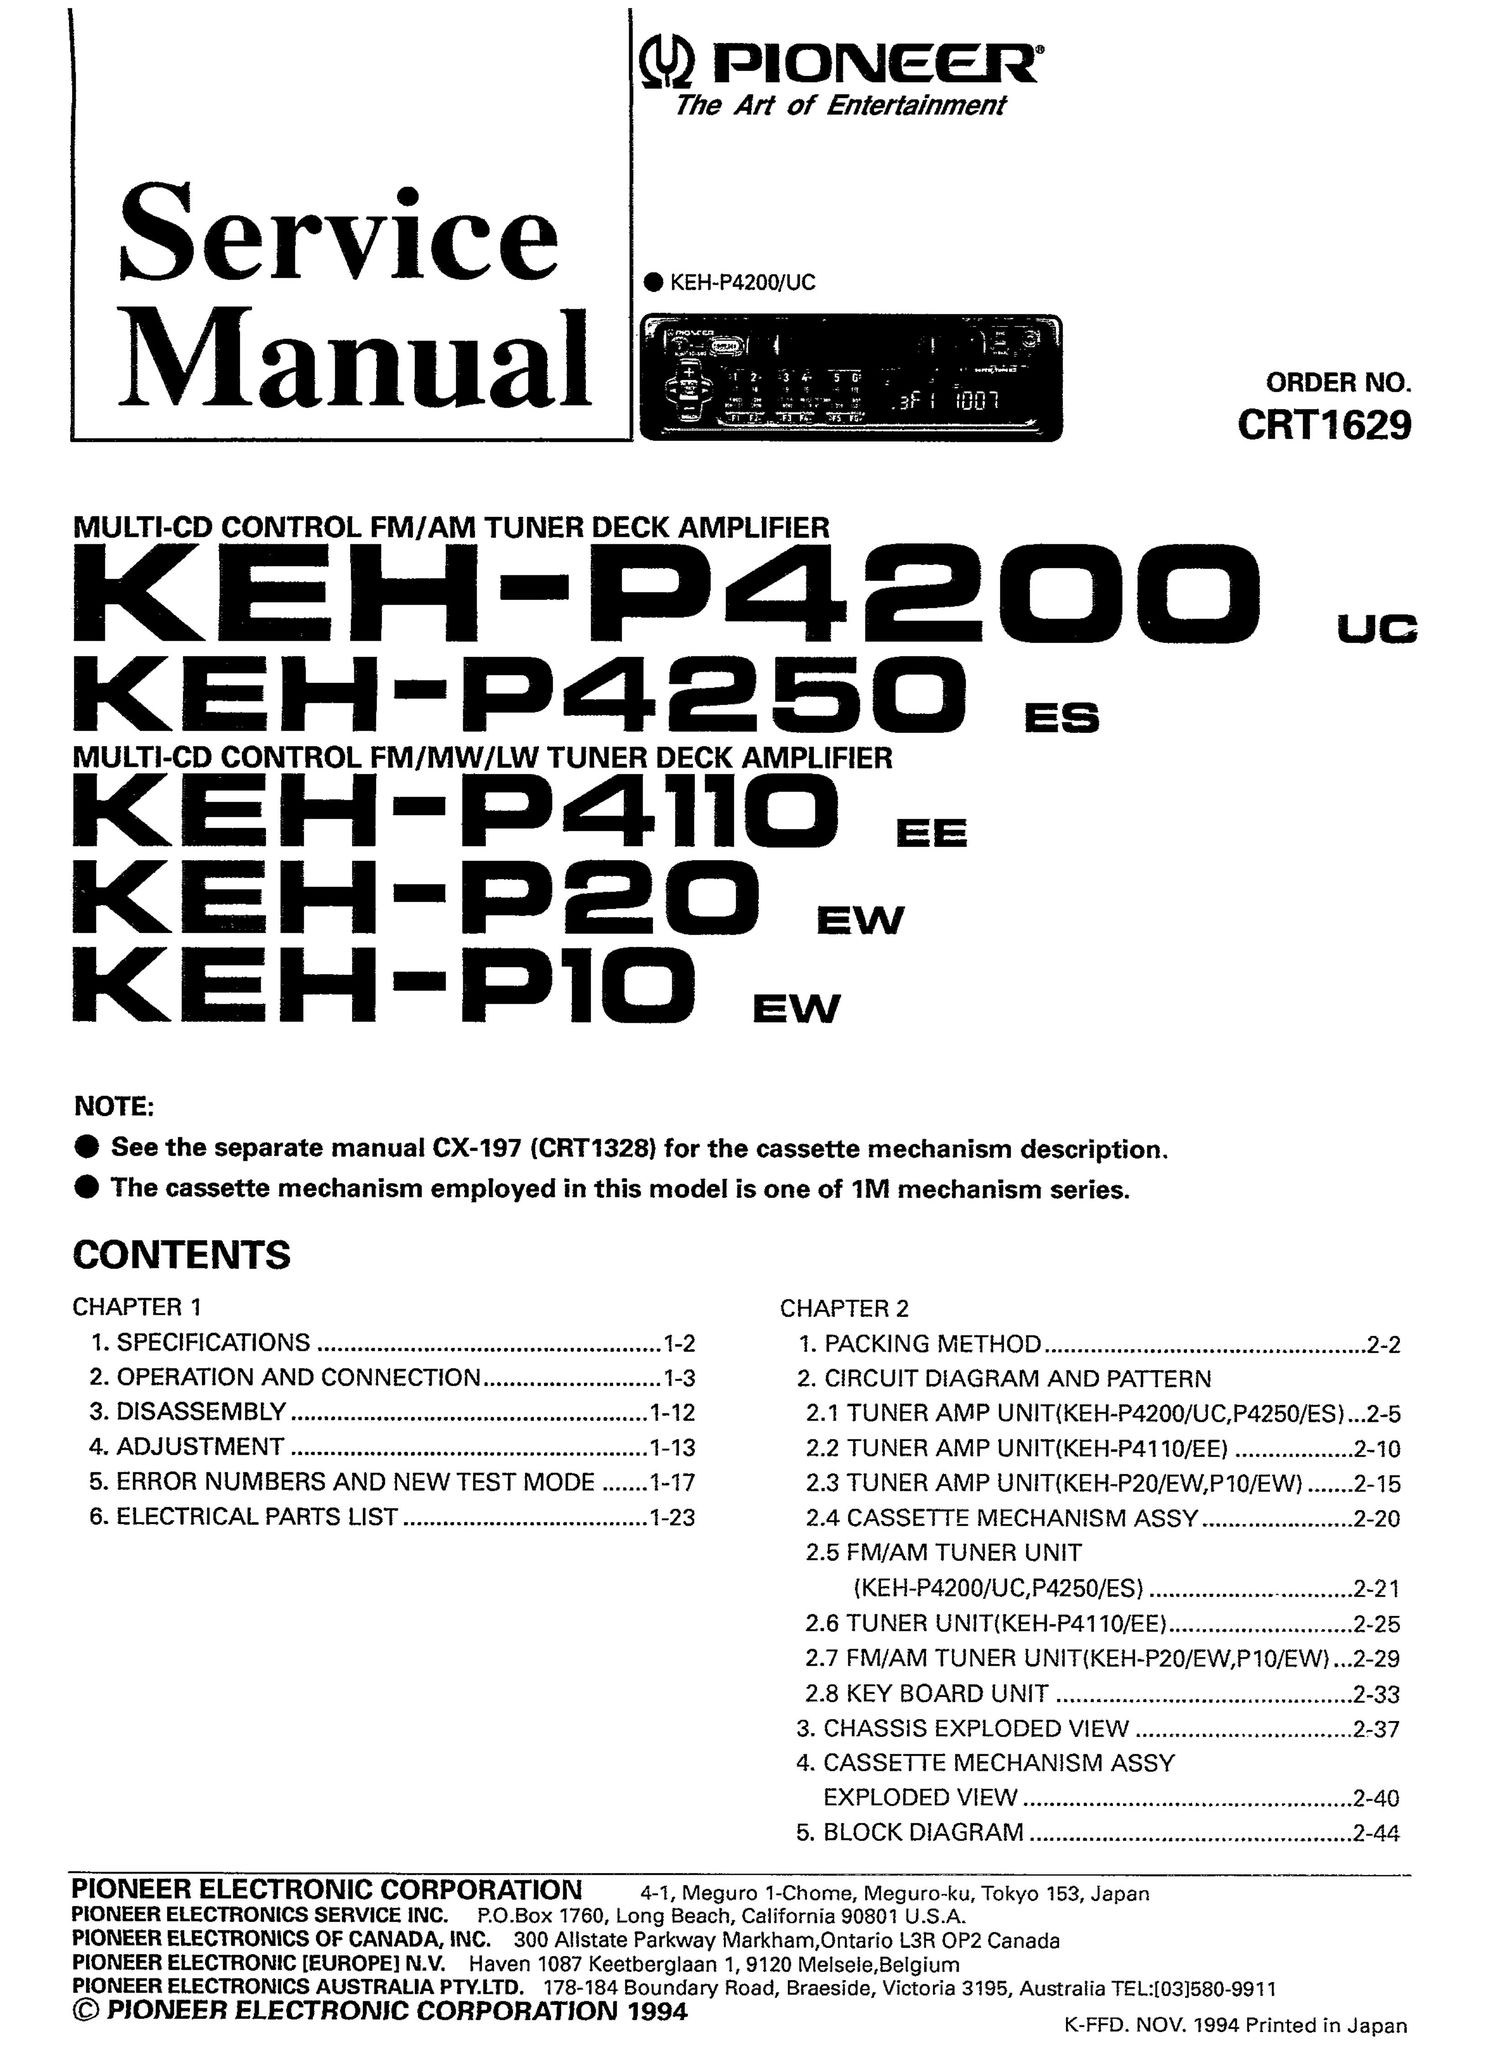 pioneer kehp 4250 service manual